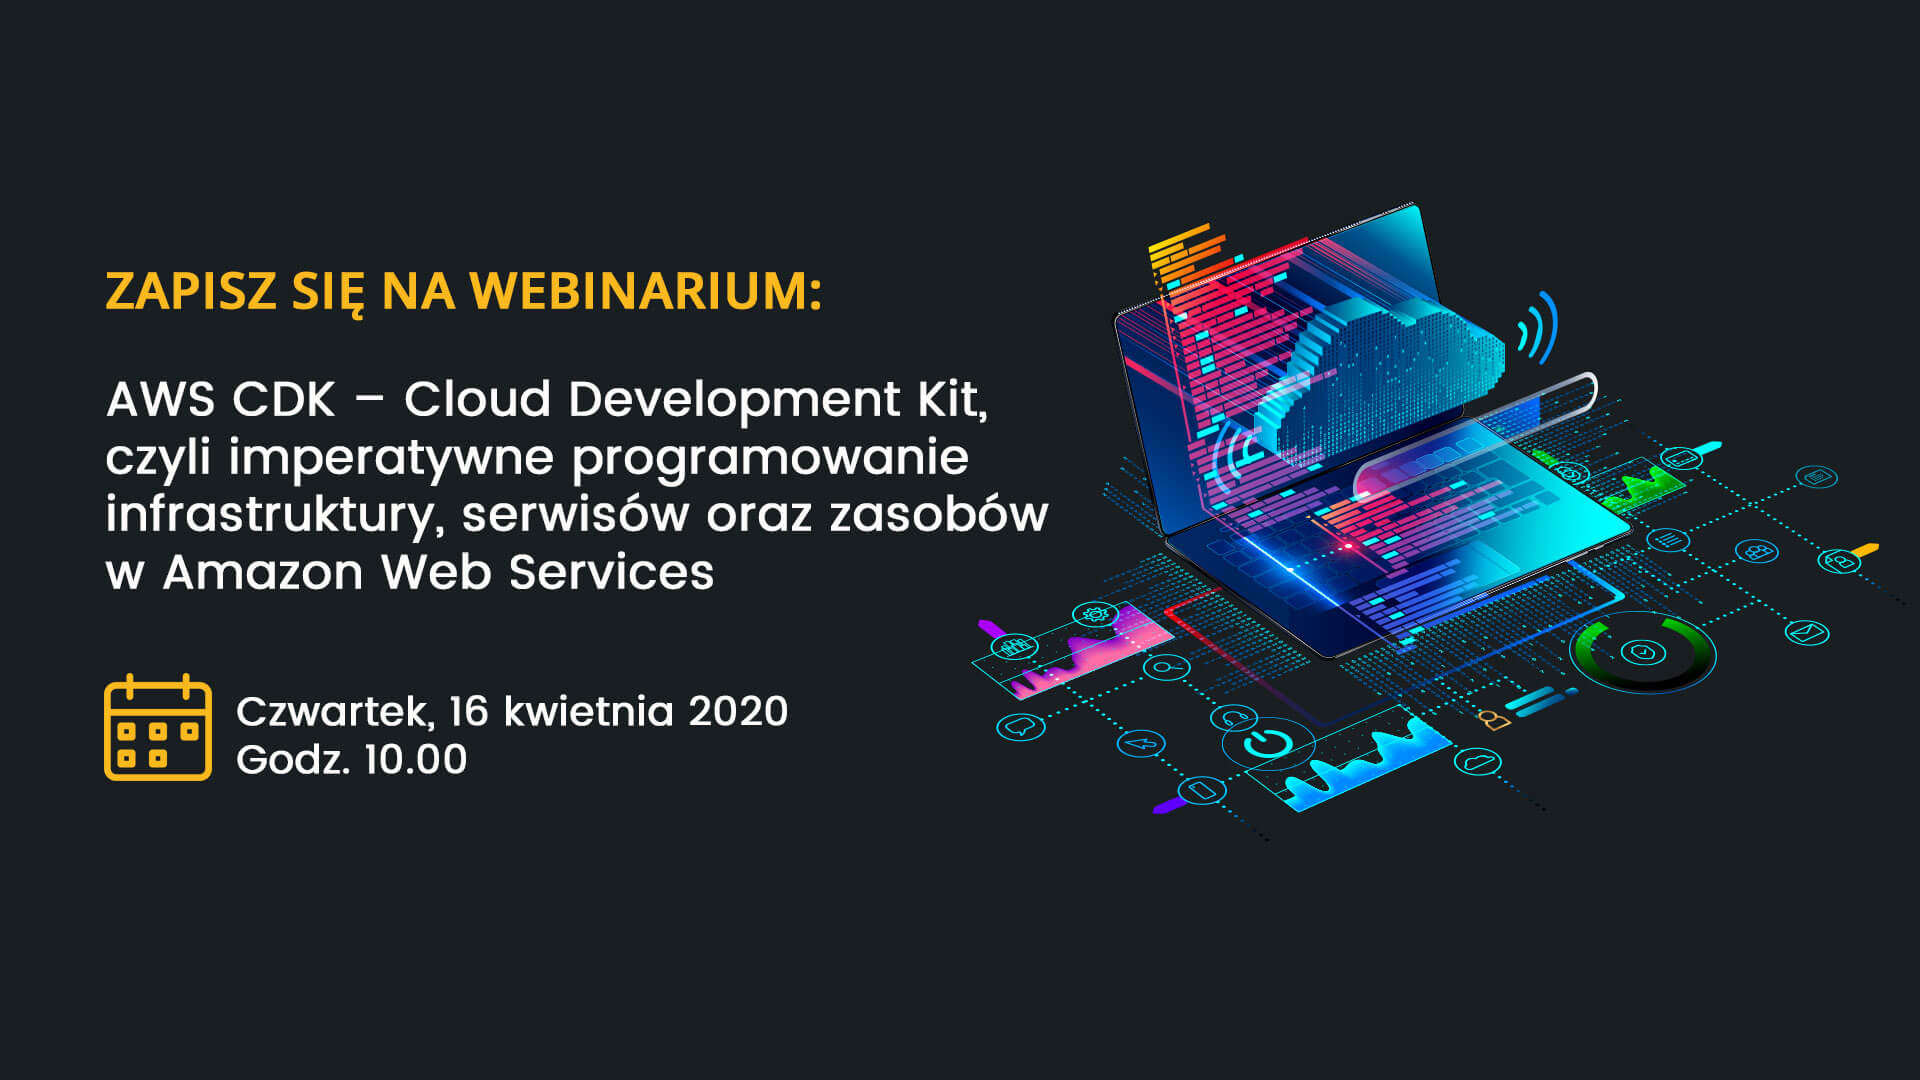 Webinar: AWS CDK Cloud Development Kit, czyli imperatywne programowanie infrastruktury w AWS